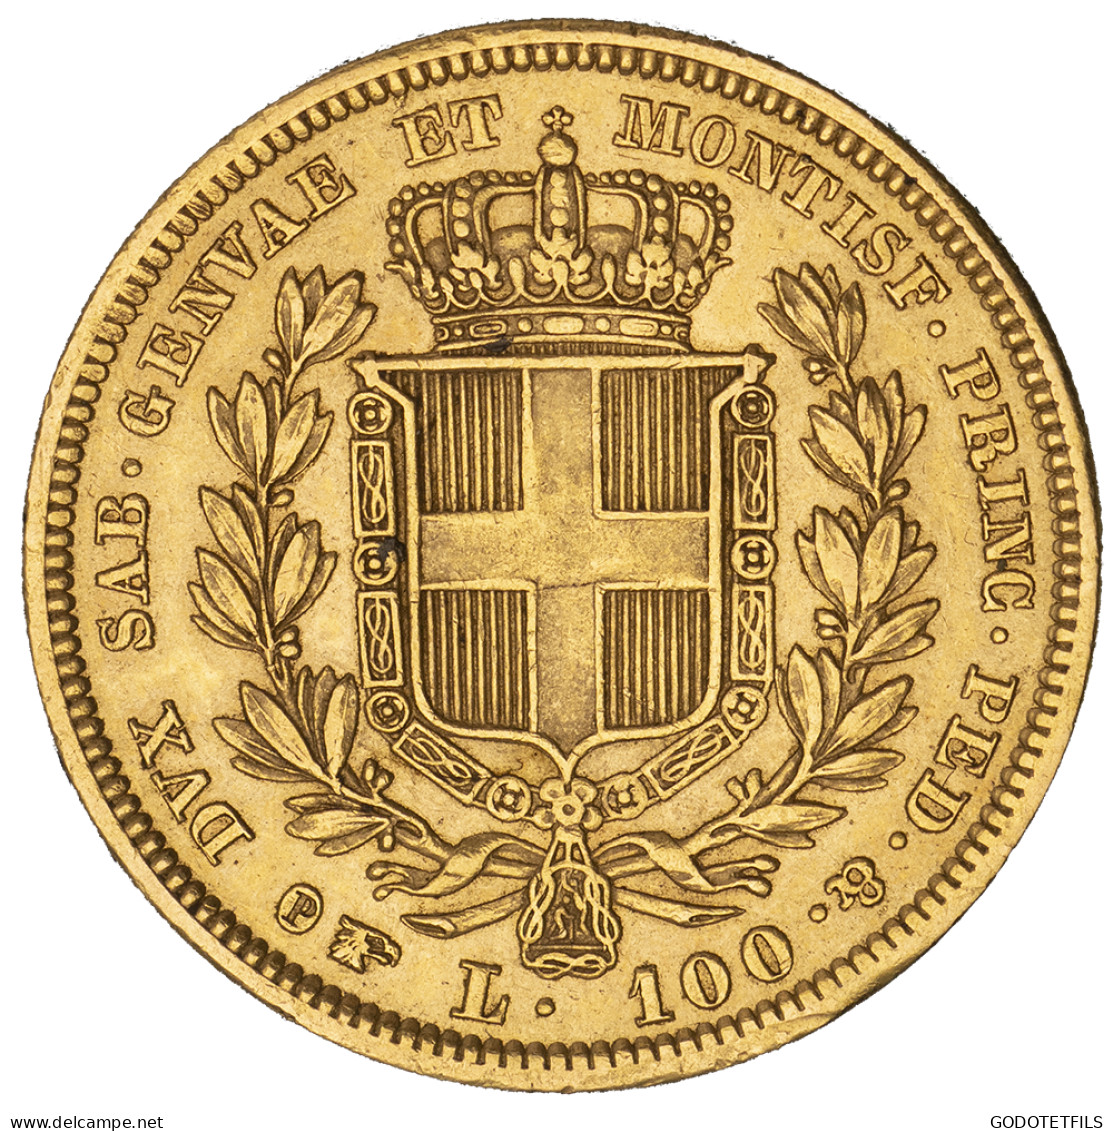 Royaume De Sardaigne-100 Lire Charles-Albert 1834 Turin - Piamonte-Sardaigne-Savoie Italiana